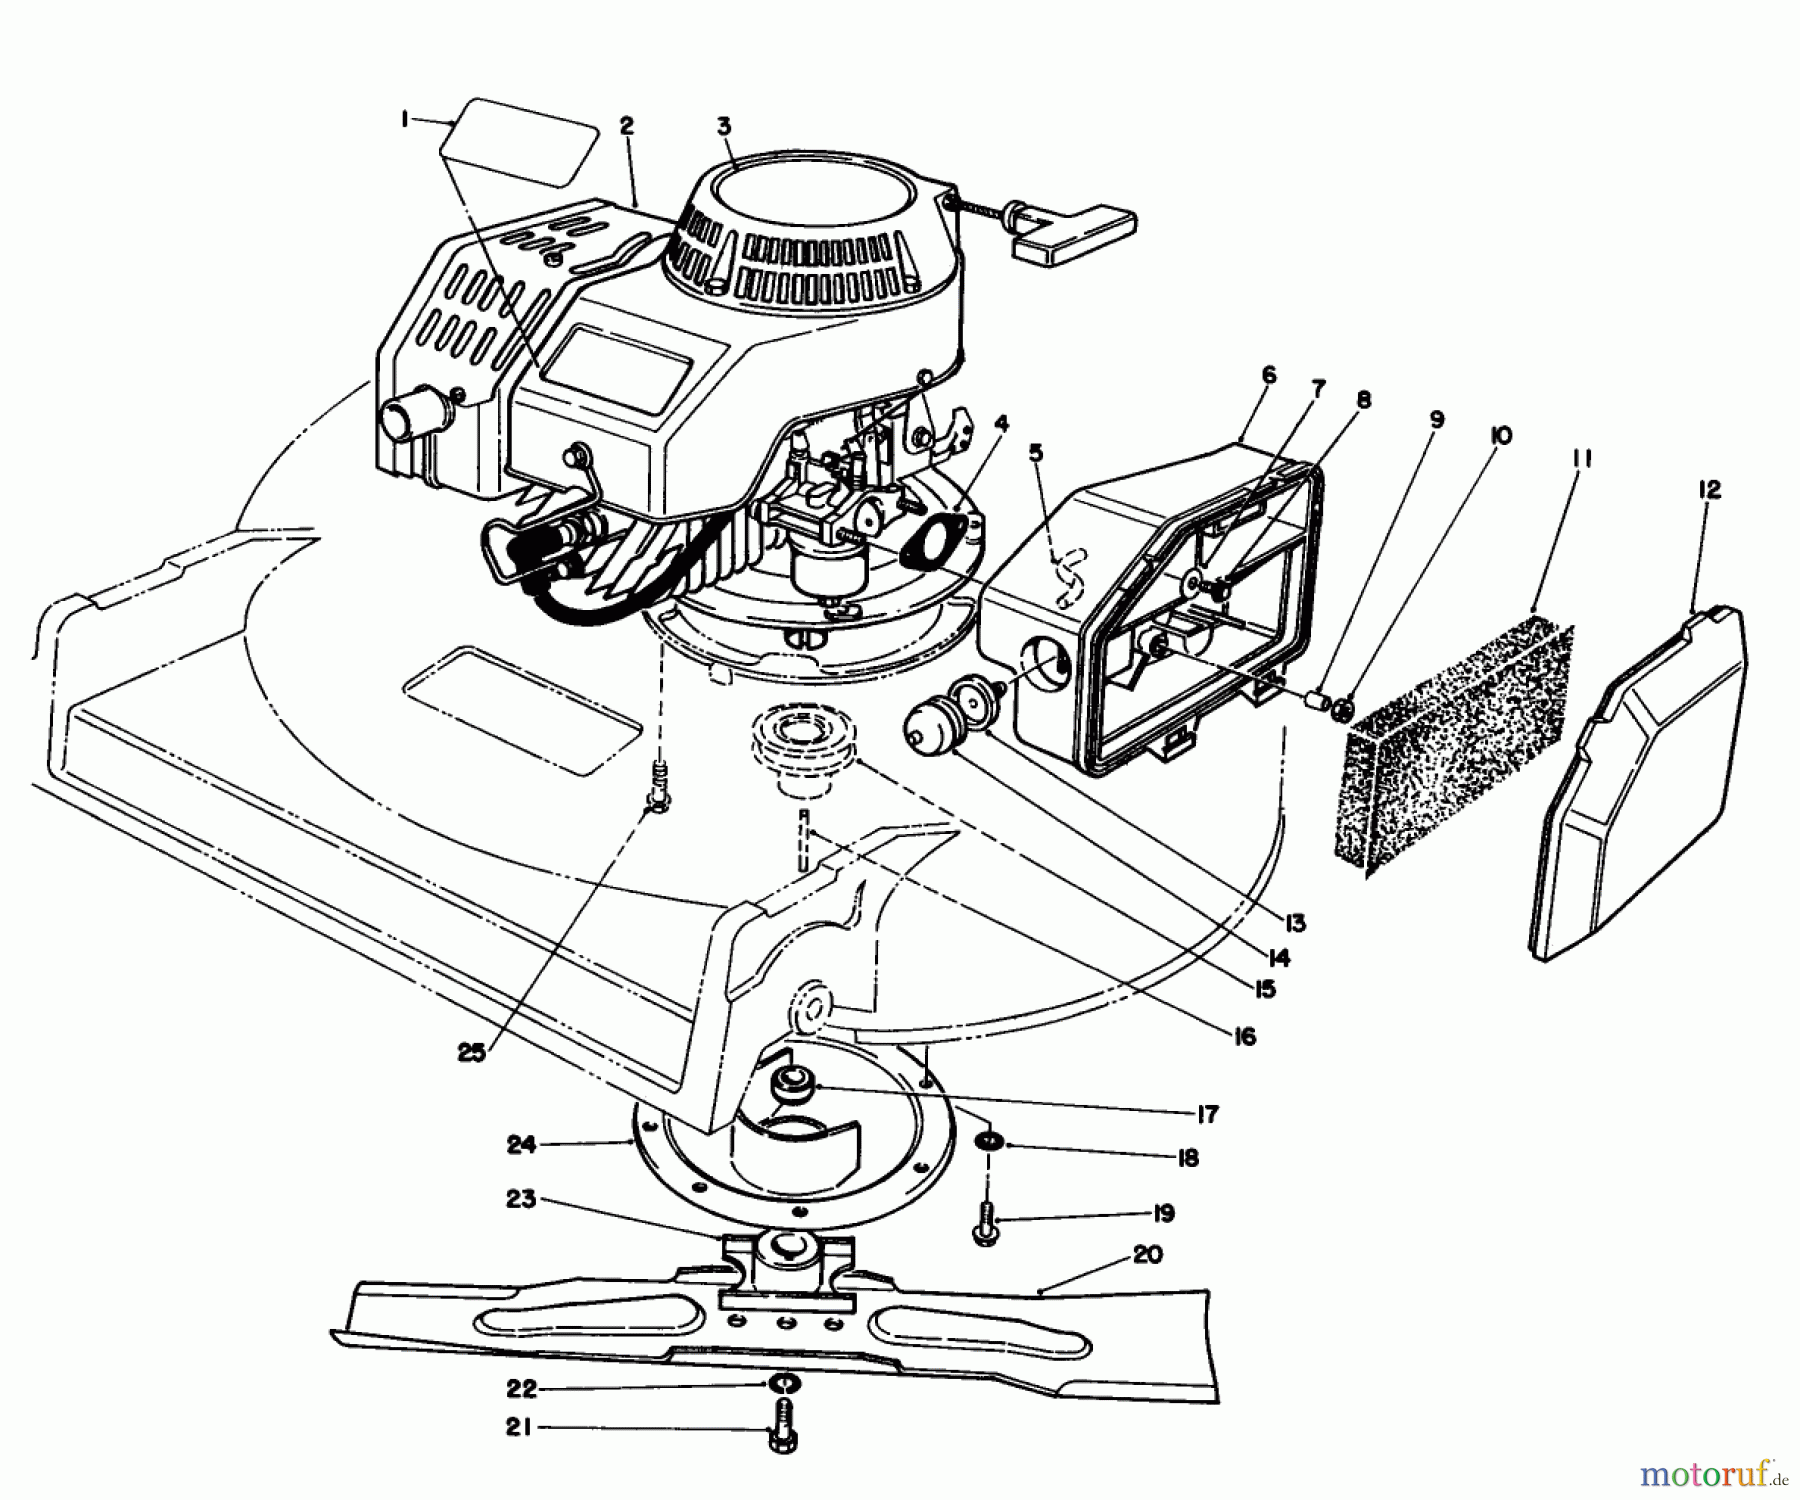  Toro Neu Mowers, Walk-Behind Seite 2 22035 - Toro Lawnmower, 1991 (1000001-1999999) ENGINE ASSEMBLY (MODEL 22035)